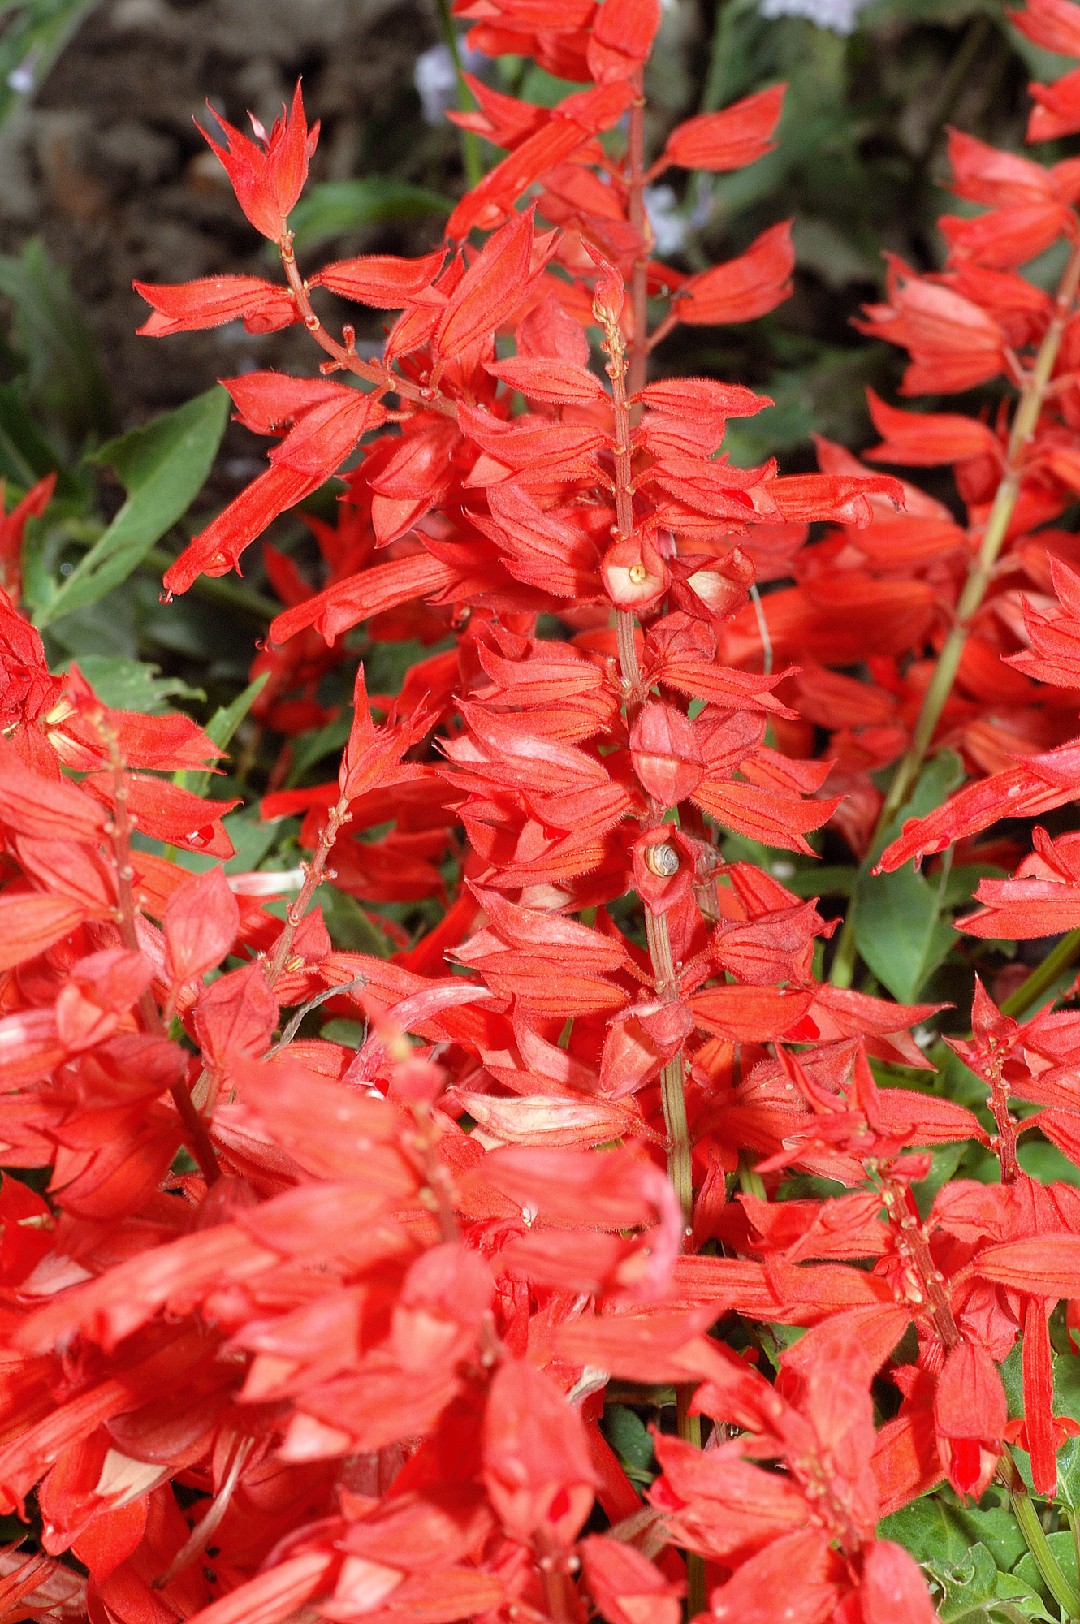 Scarlet sage (Salvia splendens) Flower, Leaf, Care, Uses - PictureThis